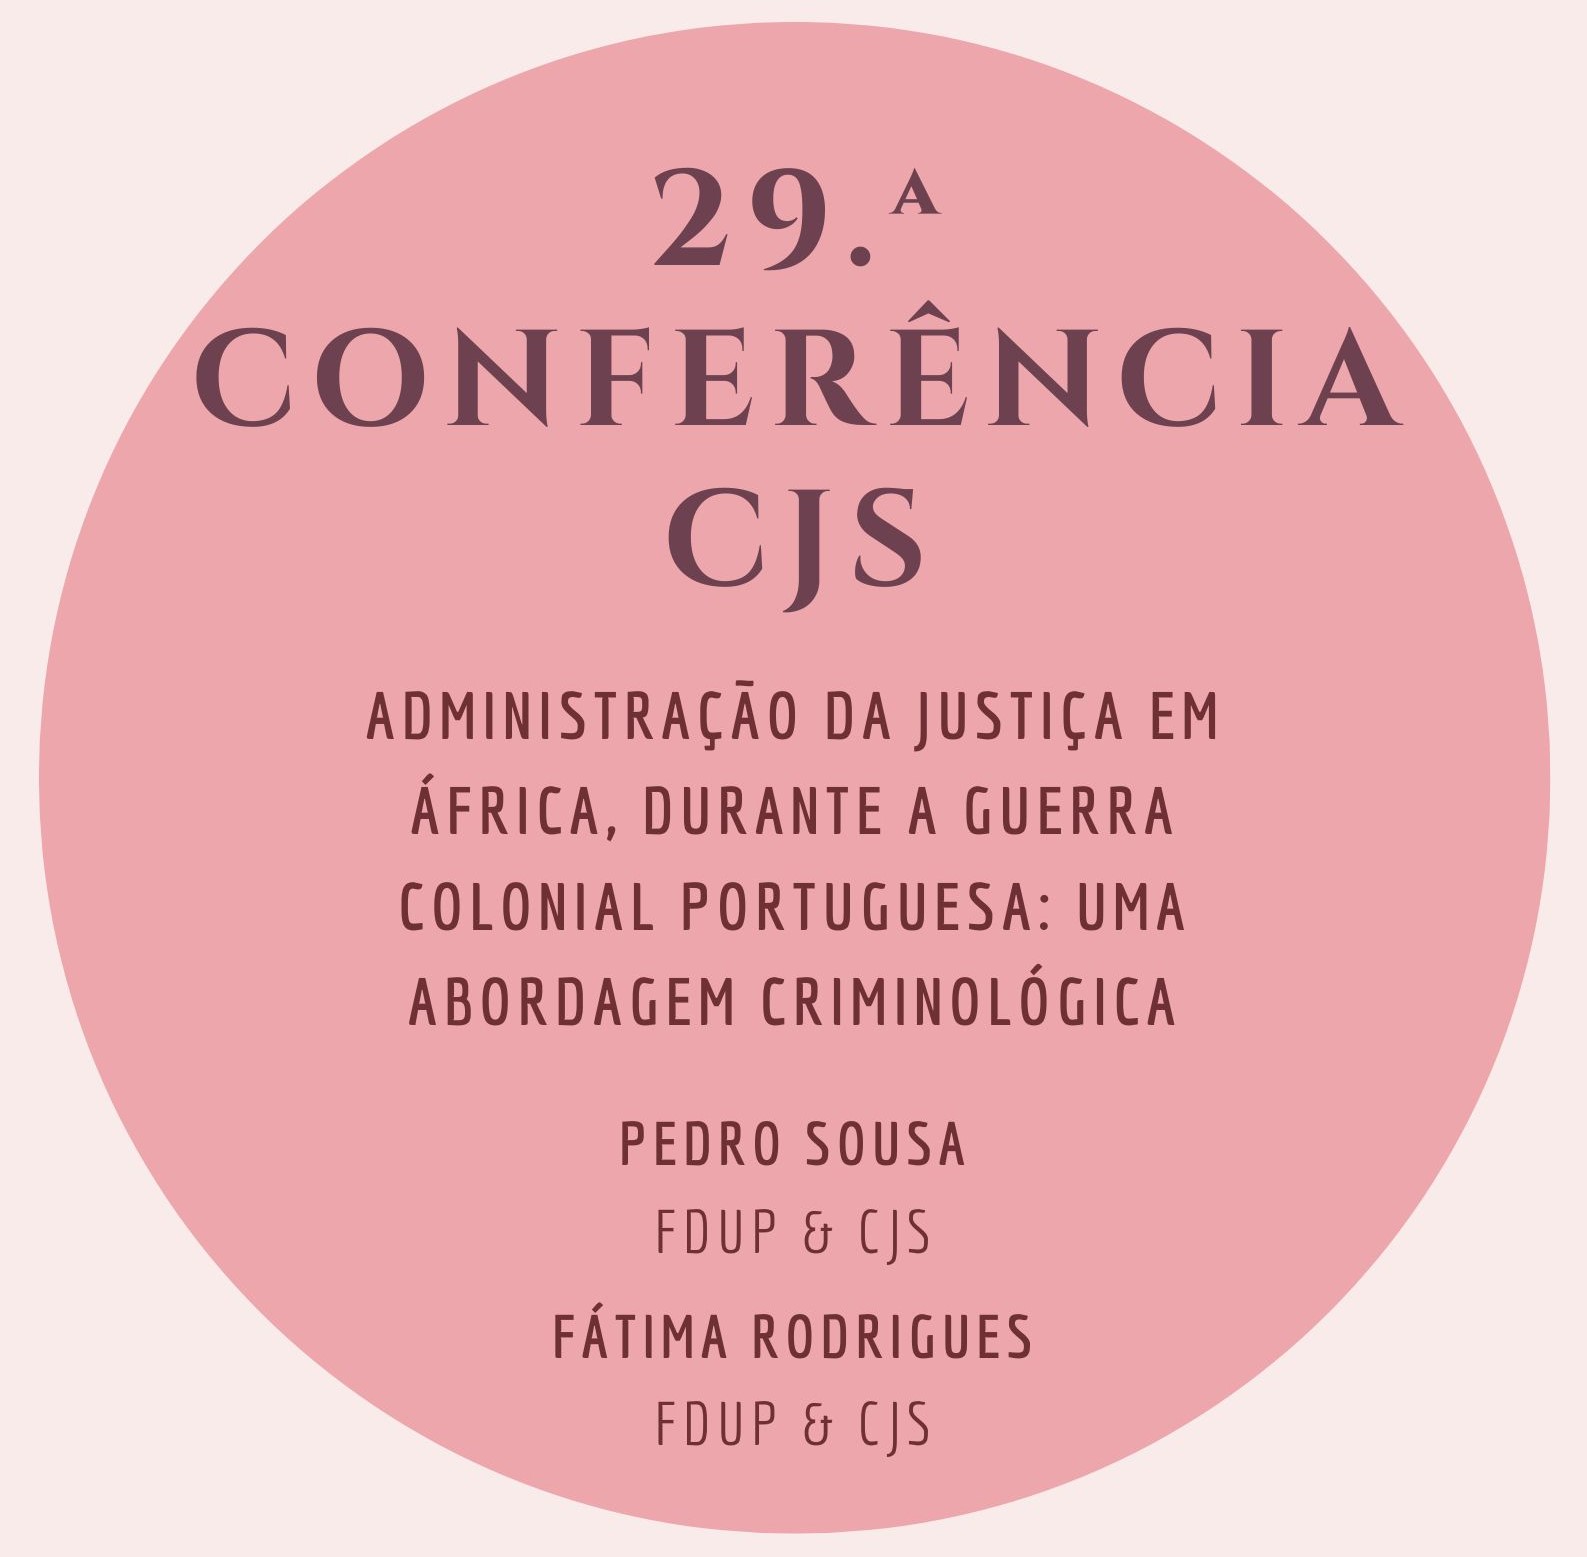 29.ª Conferência do CJS - "Administração da Justiça em África durante a Guerra colonial portuguesa: uma abordagem criminológica"